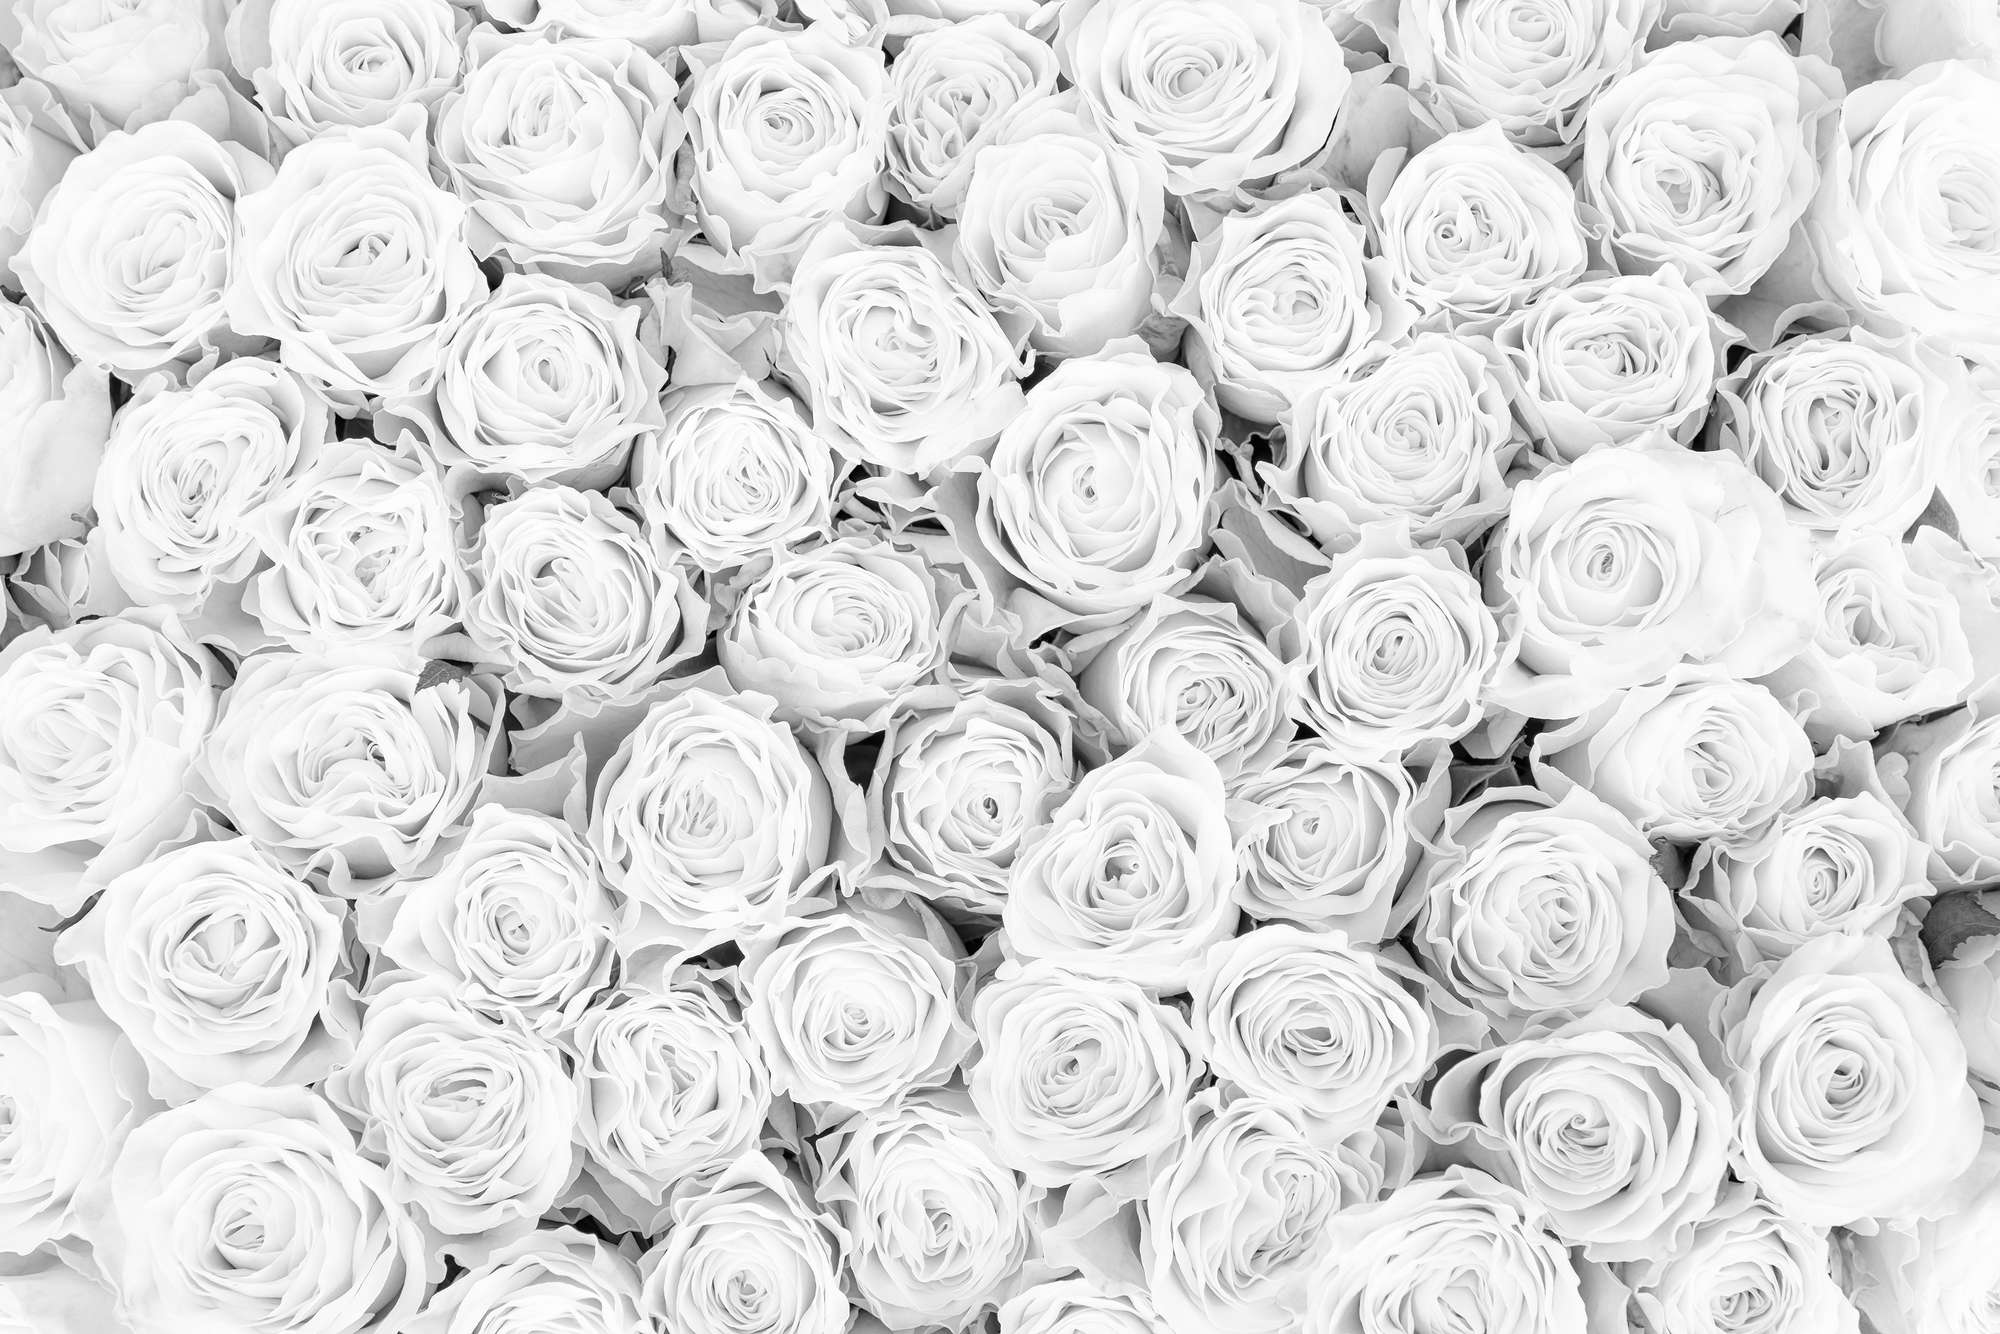             Plantas Papel pintado Rosas blancas sobre vellón liso mate
        